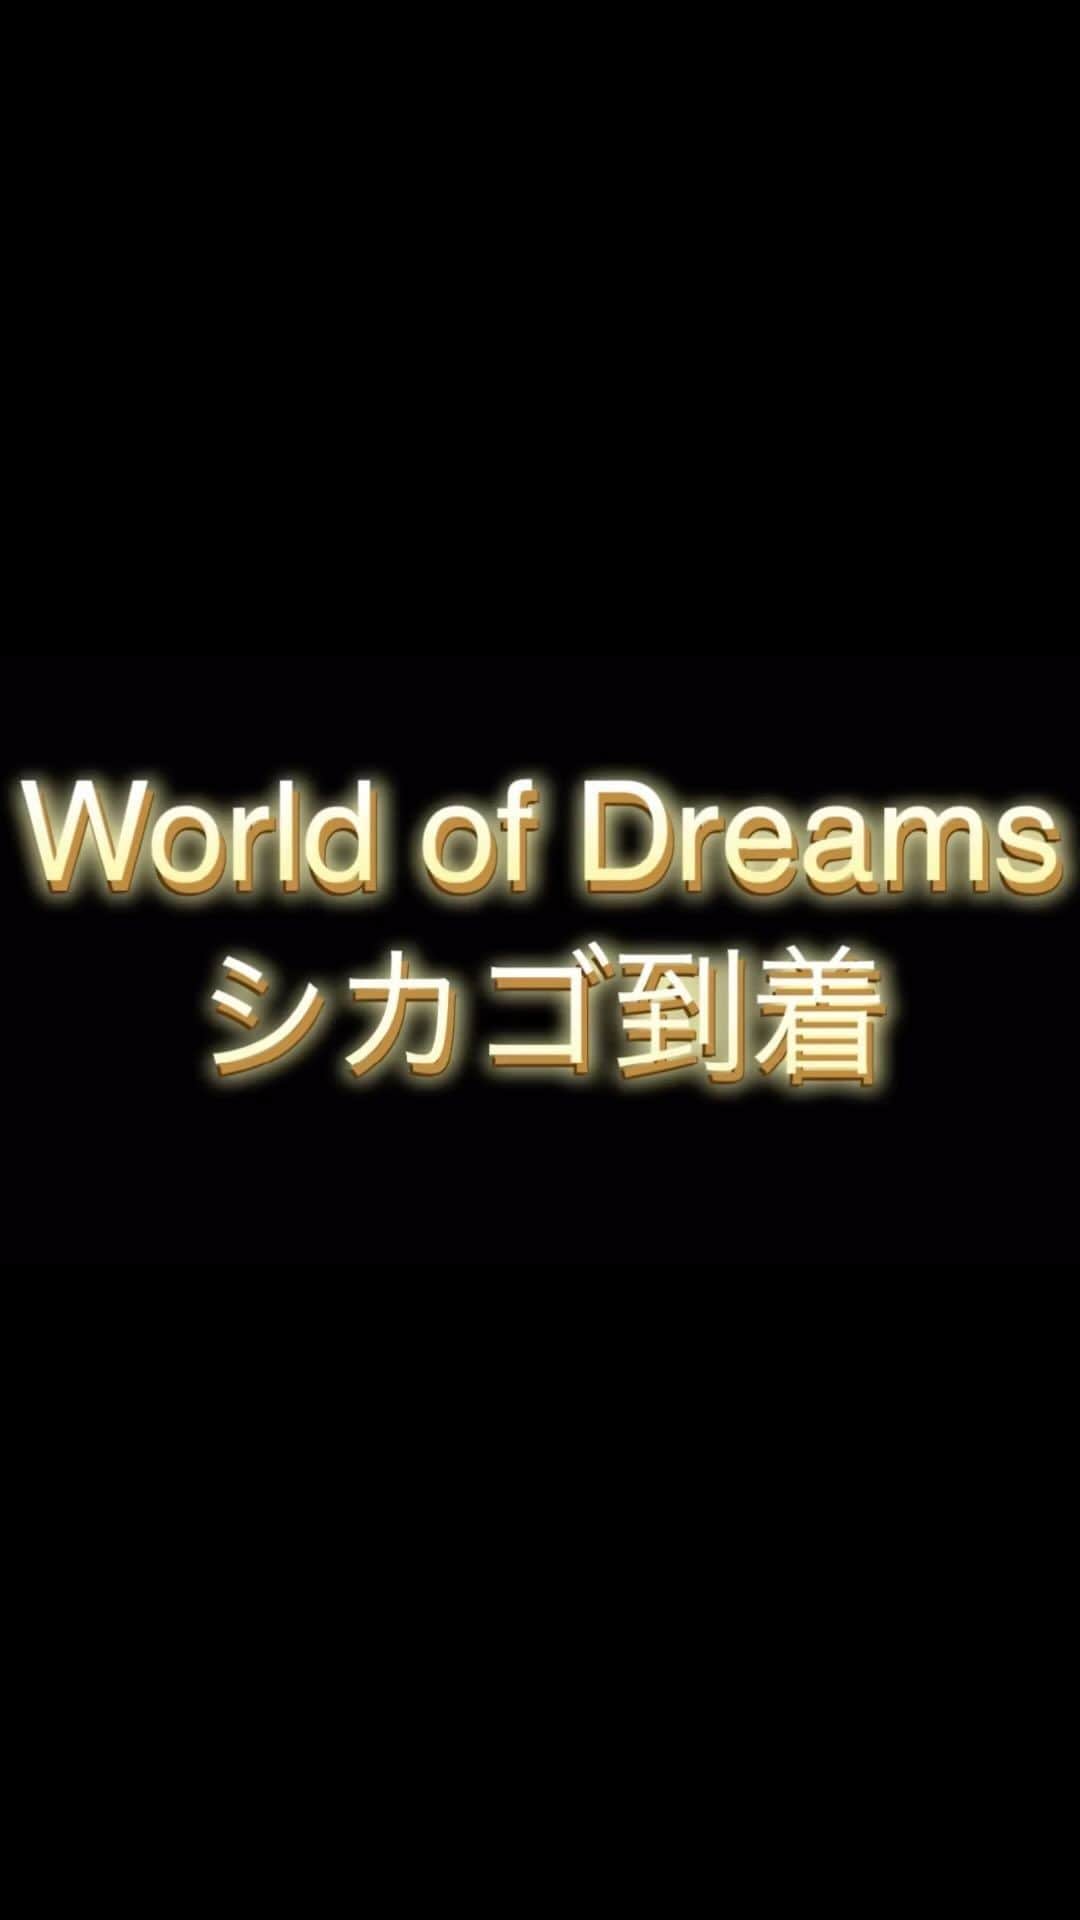 綺華れいのインスタグラム：「動画の続きは綺華れいYouTubeで💁✨  World of Dreams 2023 シカゴ～バンクーバー公演 https://youtu.be/LOx1wx5TSE0  https://ameblo.jp/rei-ayaka/entry-12818386716.html  『 World of Dreams 2023 』  シカゴ～バンクーバー公演  無事に終了し帰国いたしました✈️✨  昨年末の数ヶ月分、  ブログに書きたいことを  年末に書き溜めていながらも  旬がすぎてしまい、  未だに下書きに放置したままお蔵入り中💦  なーんてことになりそうなくらい、  旅の思い出を書き出したら  何ヶ月もかかってしまうと思いまして。  特に構成もなく思うままに撮っていた動画や  メンバーからシェアしてもらった  写真や動画を時系列に編集し、  思い出動画として  YouTubeアップいたしました🤗💕  https://youtu.be/LOx1wx5TSE0  肝心の公演の様子は、  盛り沢山なセットリストや早替わり、  海外という何かと不慣れな環境の中  ステージの事だけで精一杯💨  時間も、頭と心の余裕もなく、  ほぼほぼ旅の思い出動画となりましたが🤗✨  現地テレビと新聞の取材で  撮影頂いたお写真や、  舞台袖で忙しくサポートくださる阿部さんに  最後の最後にお願いして  撮っていただいた動画も少しあり〼💕  誰かが何かとヤラカシている  オモシロ珍道中となりましたが、  そんな様子も少し映り込み🤣 (実際はもっと色々ヤラカシてます😂😂😂)  ほぼほぼ無事に遂行できたものの、  オーラスはワタクシ綺華の  かなりやっちまったオチつき💁💦  😱😓😭💦  こちらはかなり無事ではない_(:3＞∠)_💨  でもまぁ、  みんな元気に終えることができて  それが何よりの幸せです🙏💕  お世話になりました  プロデューサー咲子✨ (プロゴルファーレイコ的な言い回し⛳️)  Ｊカレッジ阿部さん✨  そして、シカゴ・バンクーバー共に  現地で大変大変お世話になりました  皆々様には感謝の想いが尽きません🙏💫💕  今回初めてご一緒させて頂きました  一期上の天羽珠紀さんにも  初参加なのにお世話になりまくり🤩💕  スーパーマーケットで  「ヘアスプレーって何処ですか？」  と聞いた時には(←英語がわかるから)  「あ、こっちこっちー💁✨  って。私、店員じゃないし🤣🤣🤣」  みたいな😂💕  チョー楽しく、頼りになり、  ウケるほどに博識😆💡  そのままアメリカ旅を続けている珠紀さん🇺🇸  帰国フライト時にはすでに  アモウタマキロスな綺華でした😂  そして  いつも会う度におおらかさと優しさが増し、  皆をふわりとまとめてくださる  キャミさんこと毬穂えりなさん💕  COOL✨とCUTE💕が絶妙で  いざという時「絶対大丈夫」との一言で  みんなが落ち着くパワーを持つ  珠まゆらちゃん✨  この度も  素晴らしいメンバーとご一緒させて頂き、  睡眠不足＆ハードスケジュールでも  ずっと楽しすぎるWODとなりました🙏✨  ご覧くださいました現地の皆様、  サポートいただきました皆様、  長い時間と労力をかけて観に来てくれた  スーパーファンの皆様、  携わってくださいましたすべての皆様に  感謝の気持ちをいっぱい込めて💖  Thank you so much.🙏💫💕  https://youtu.be/LOx1wx5TSE0  World of Dreams 2023 シカゴ～バンクーバー公演 2023年8月18日～26日2020年開催予定だった海外公演『World of Dreams』✨コロナにより中止となり、満を持して約5年ぶりの開催となりました*⋆✈プロデューサー：フラワー咲子さん率いる宝塚OG：毬穂えりなさん、天羽珠紀さん、珠まゆらちゃん、綺華れい。そして制作：Ｊカレッジの阿部さん肝心の公演模様... リンク youtu.be」